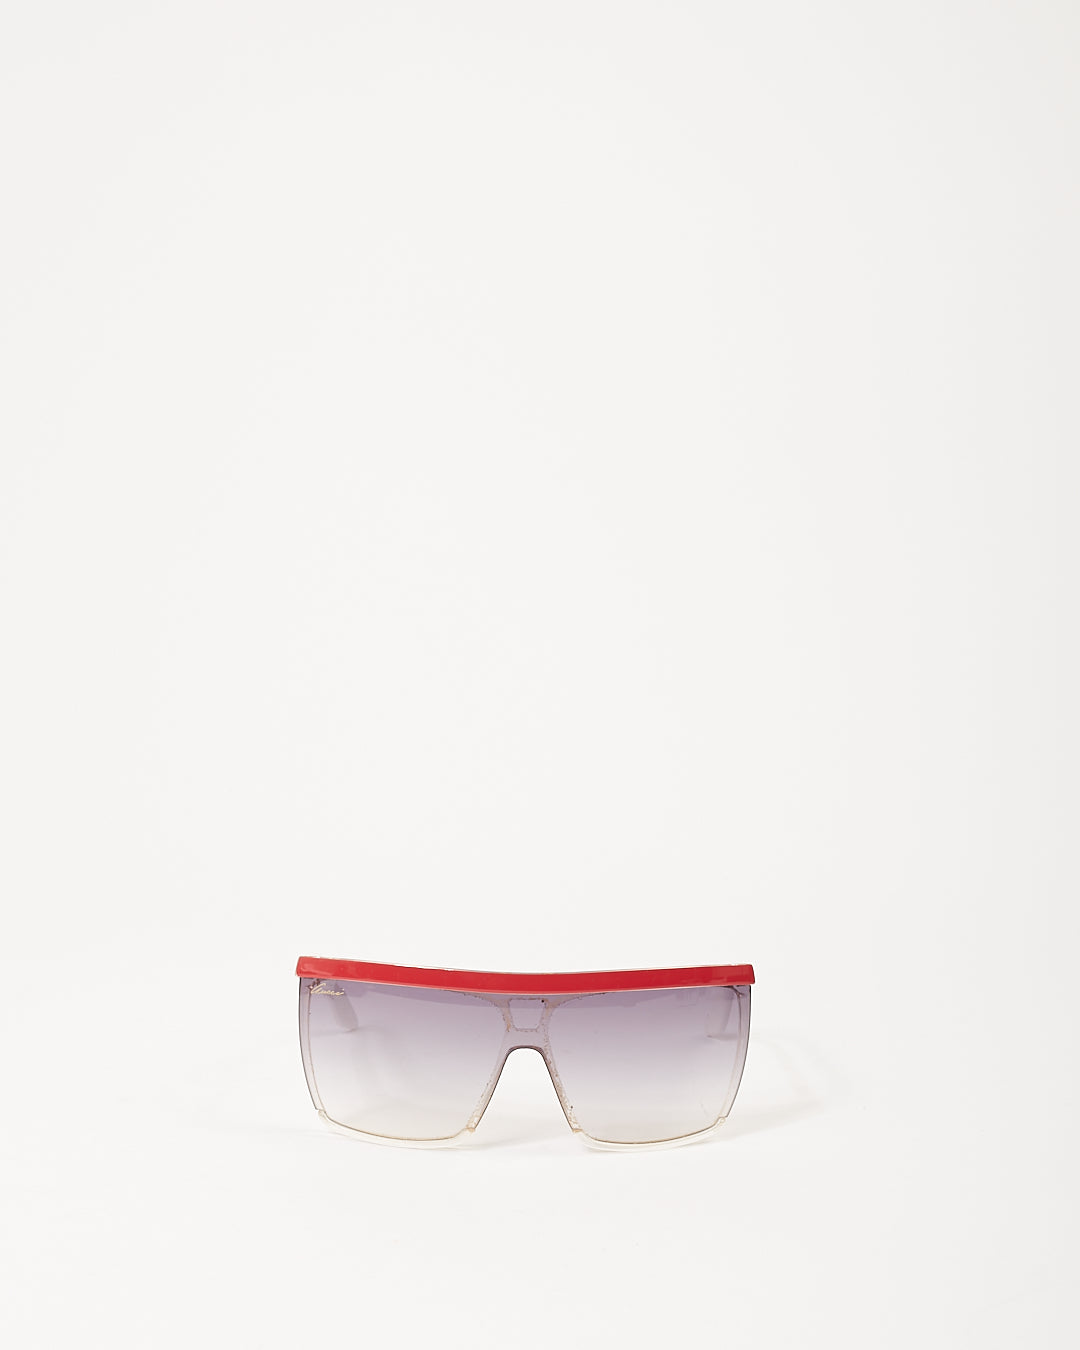 Gucci Red/White GG 3554/S Shield Sunglasses